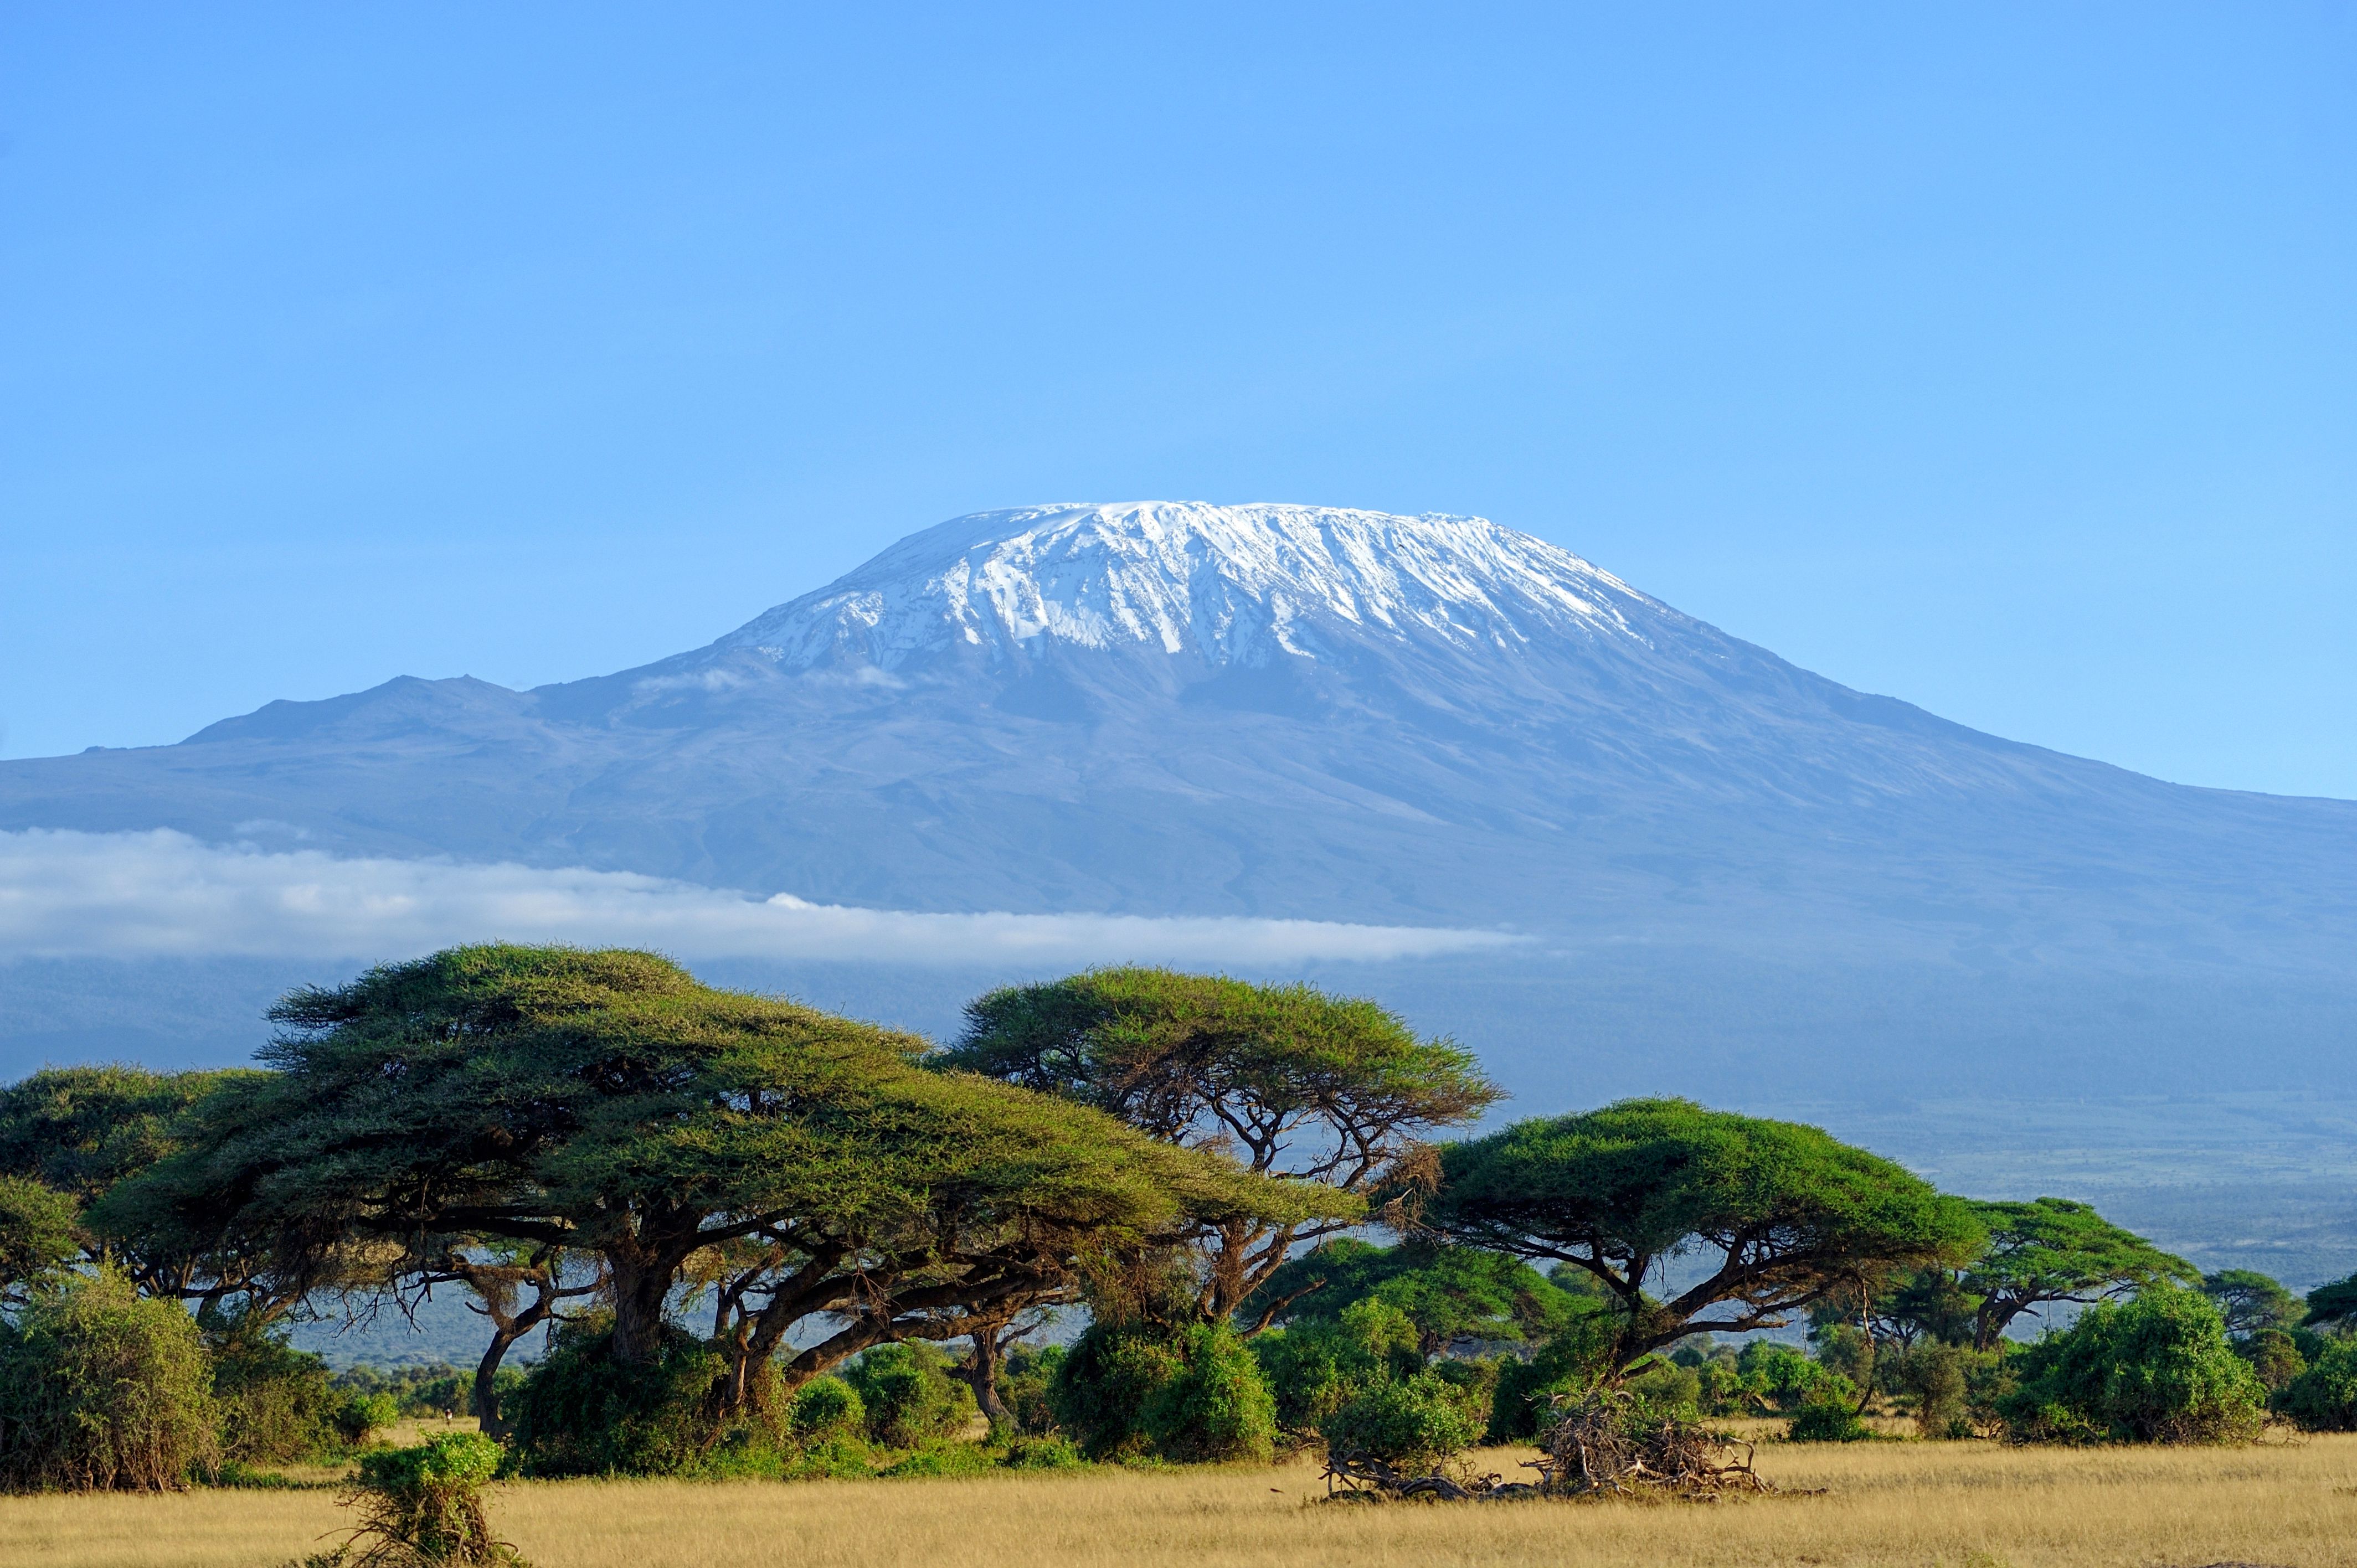 Insights into Trekking Mount Kilimanjaro